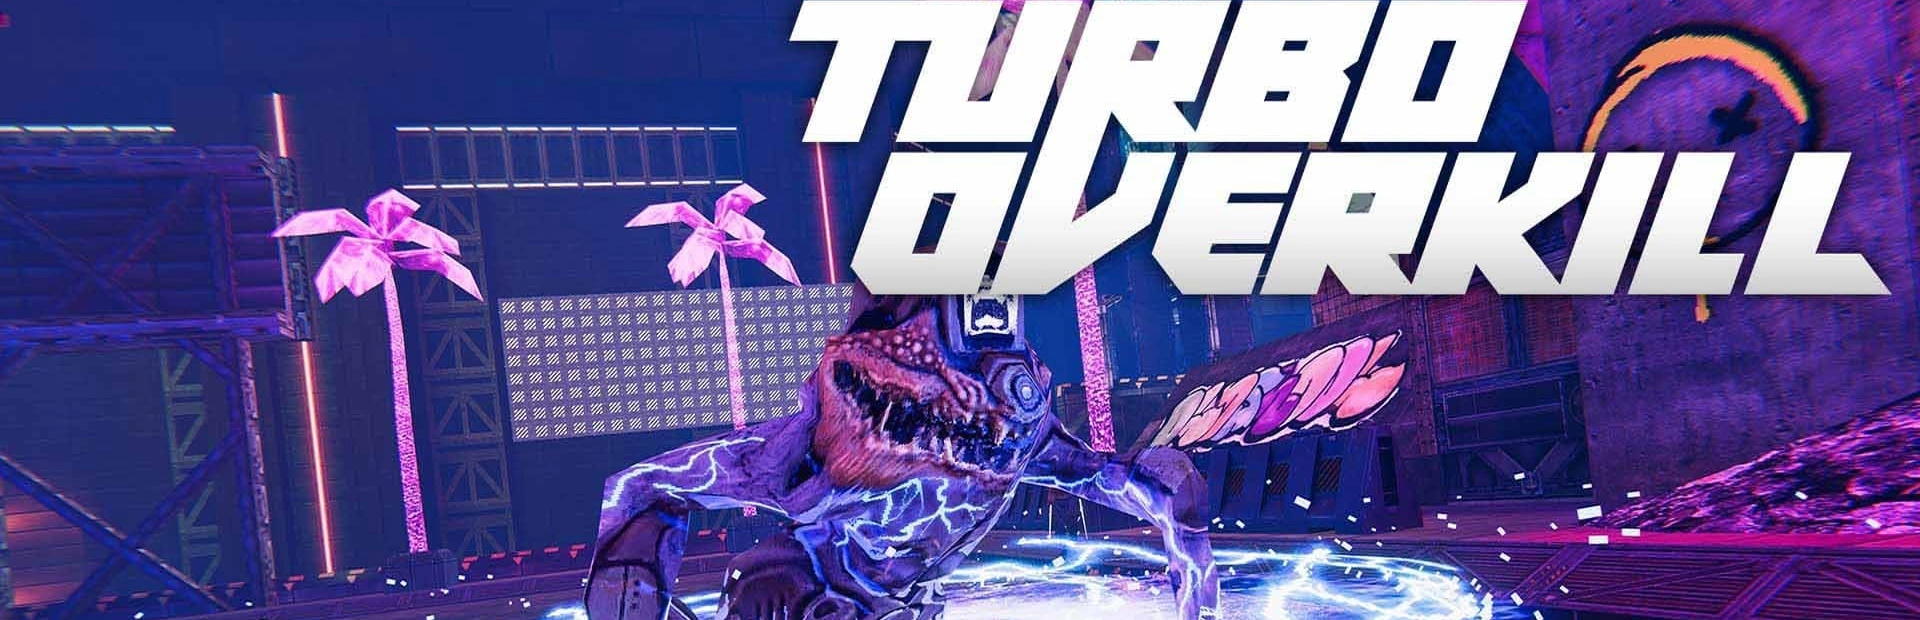 دانلود بازی Turbo Overkill برای کامپیوتر | گیمباتو